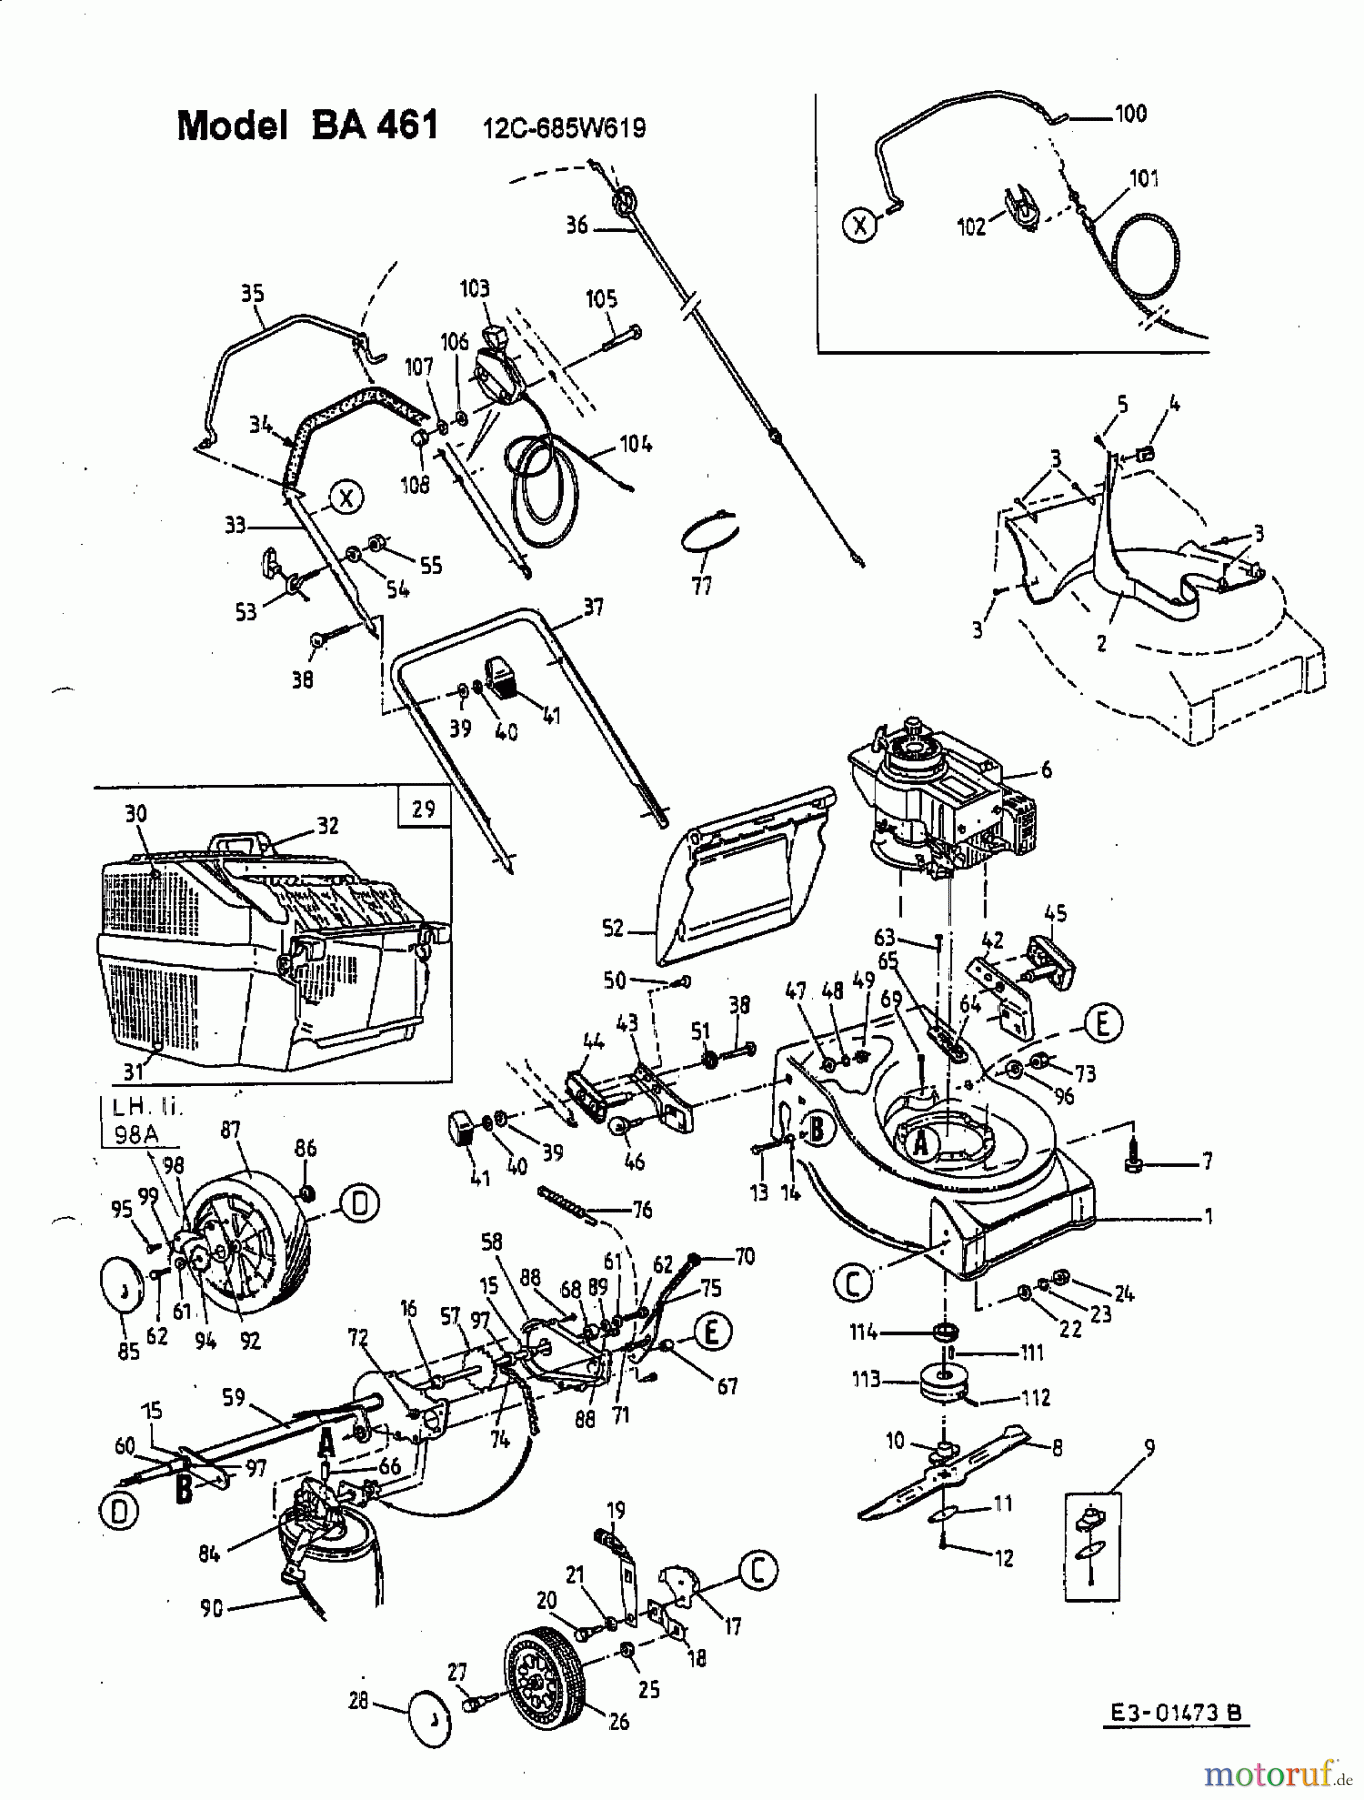  Fleurelle Motormäher mit Antrieb BA 461 12C-685W619  (2002) Grundgerät